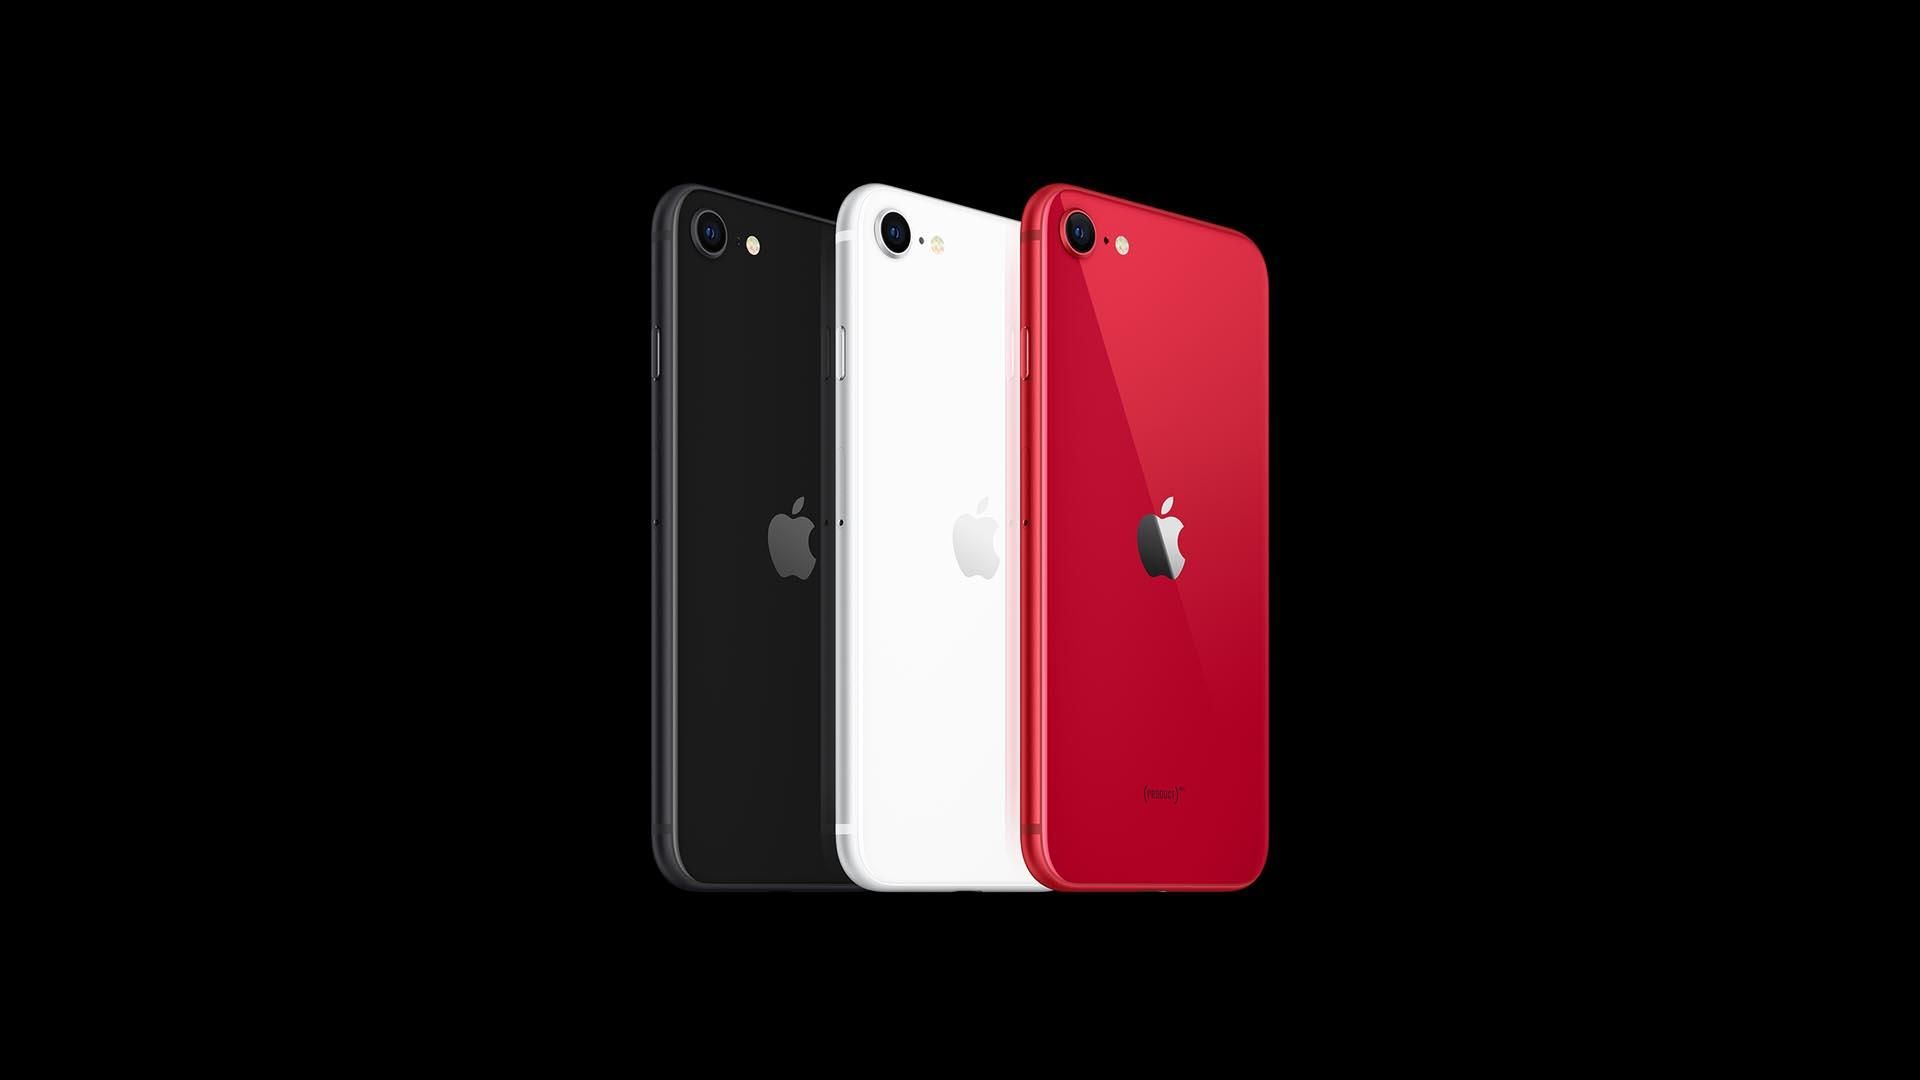  iPhone SE 2 Plus можуть презентувати восени: характеристики і ціна